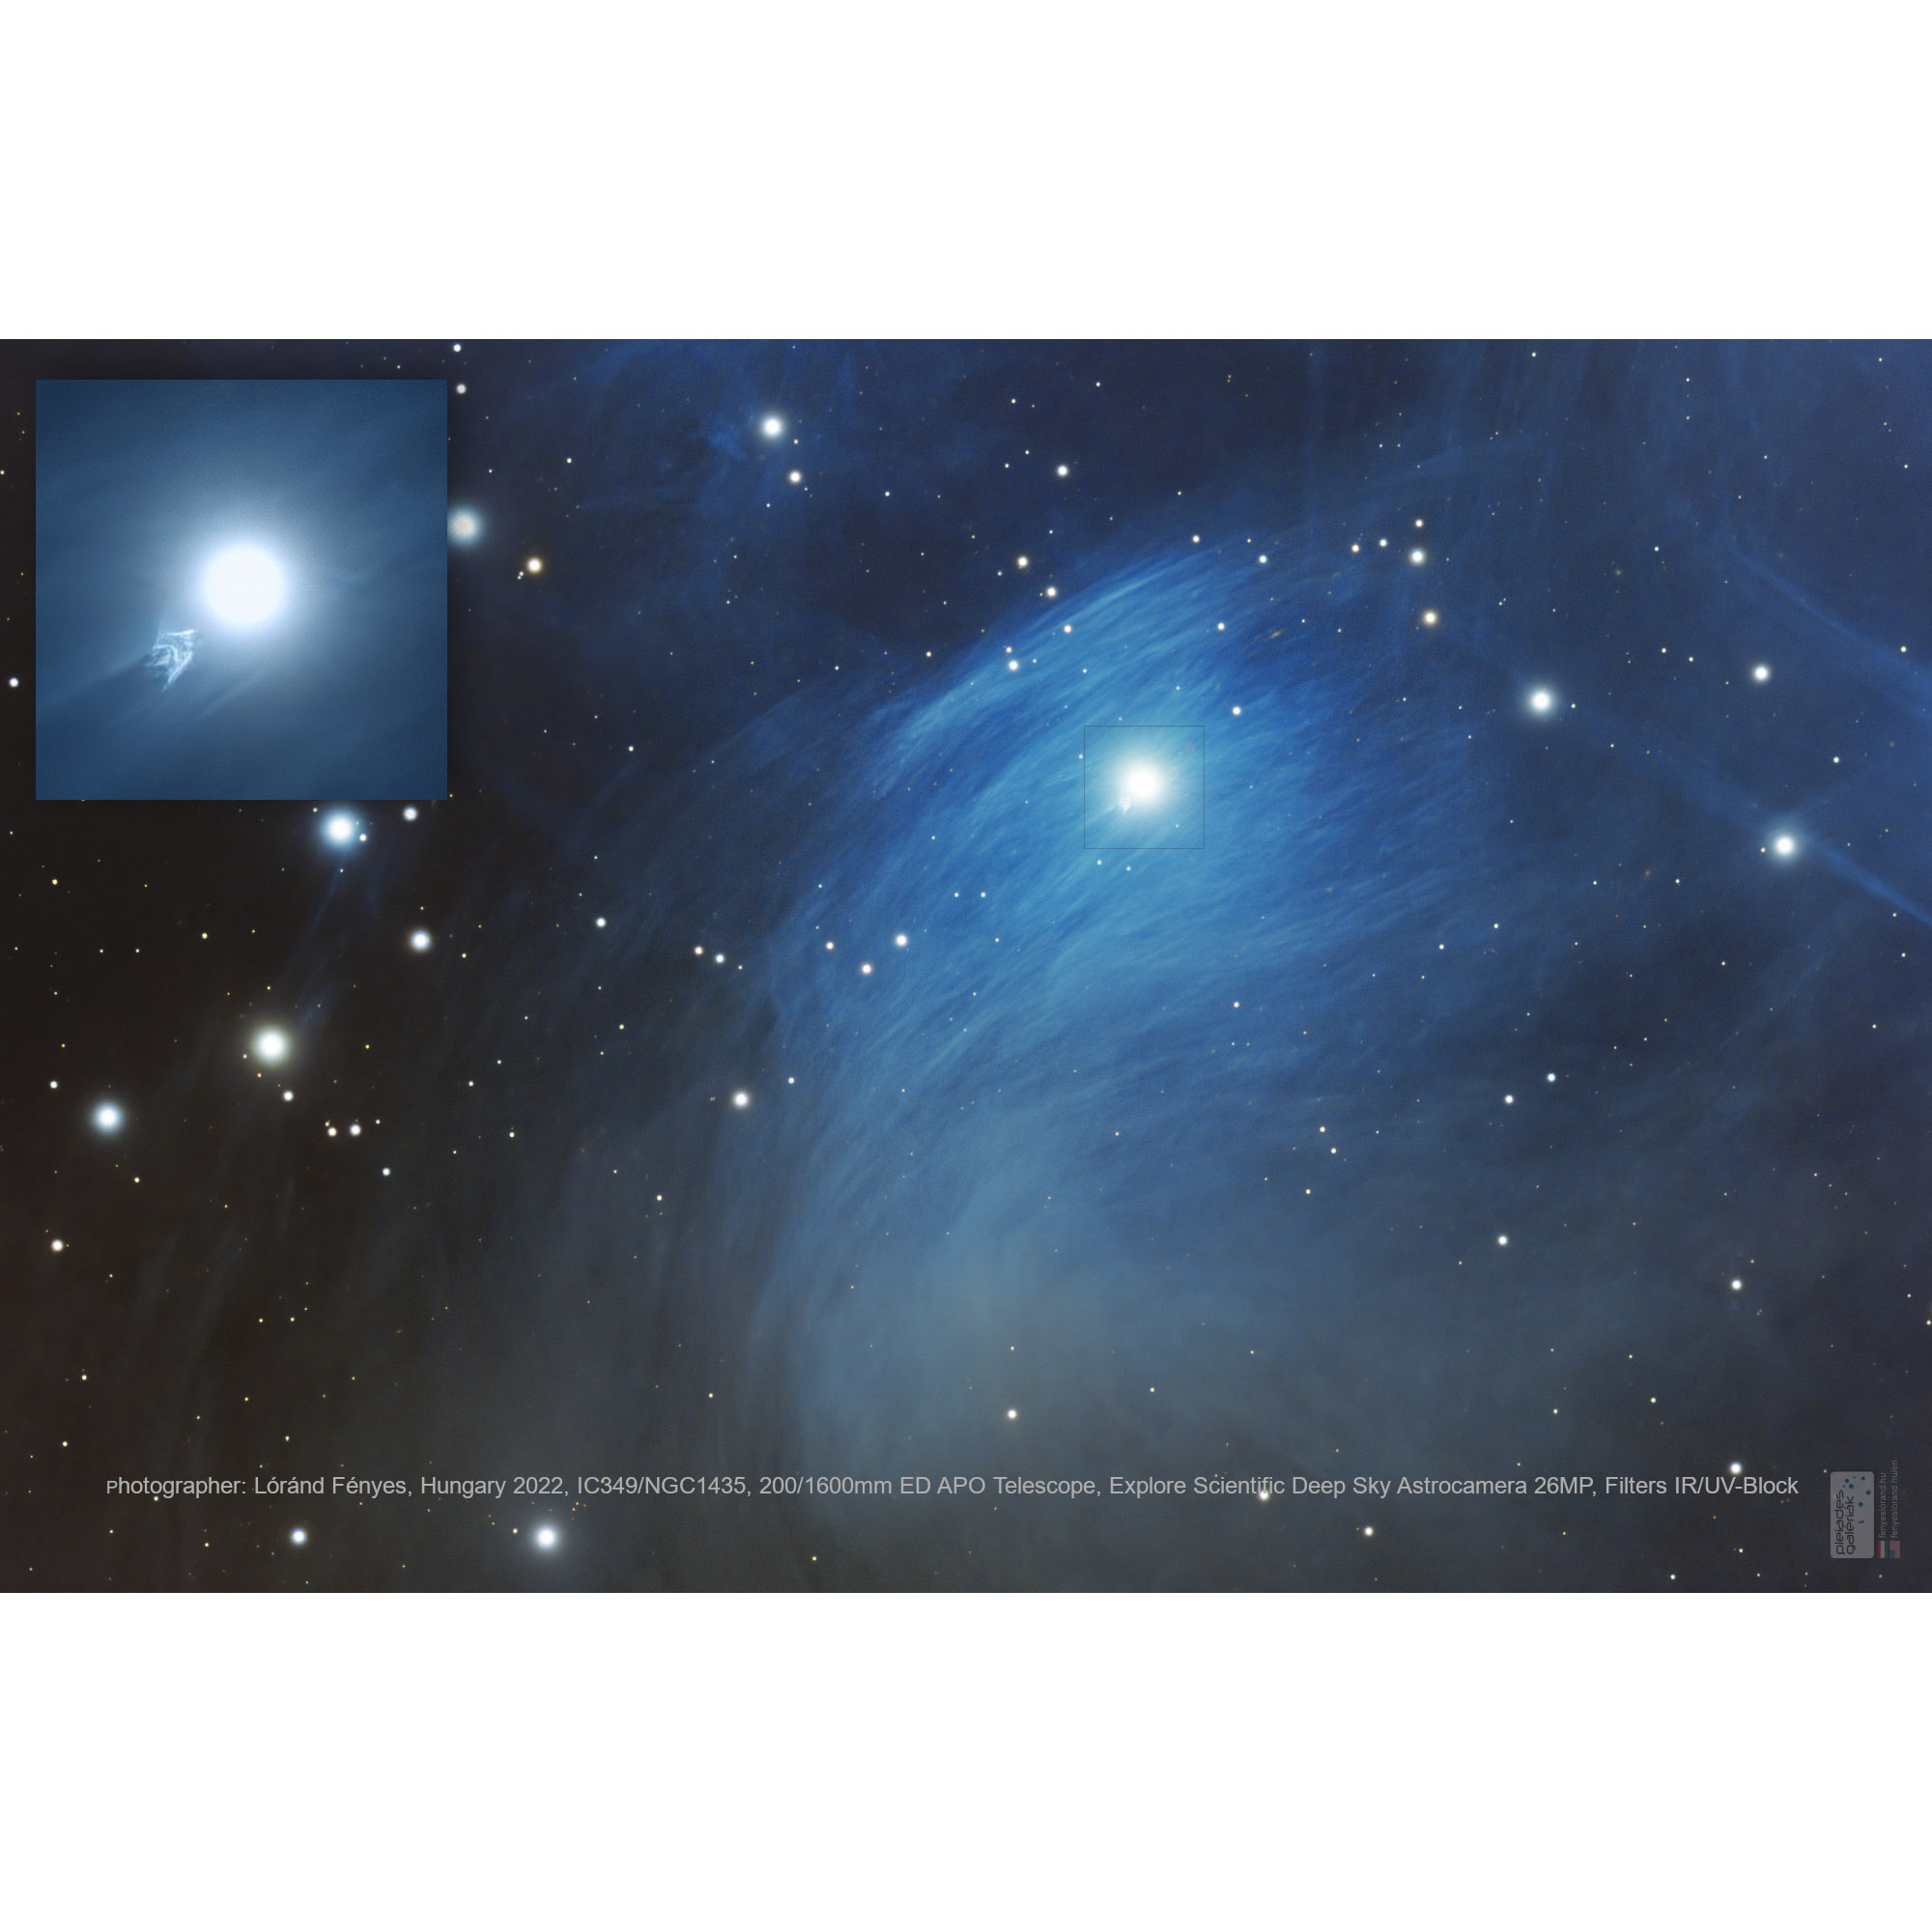 EXPLORE SCIENTIFIC Deep Sky Astro Camera 26MP 